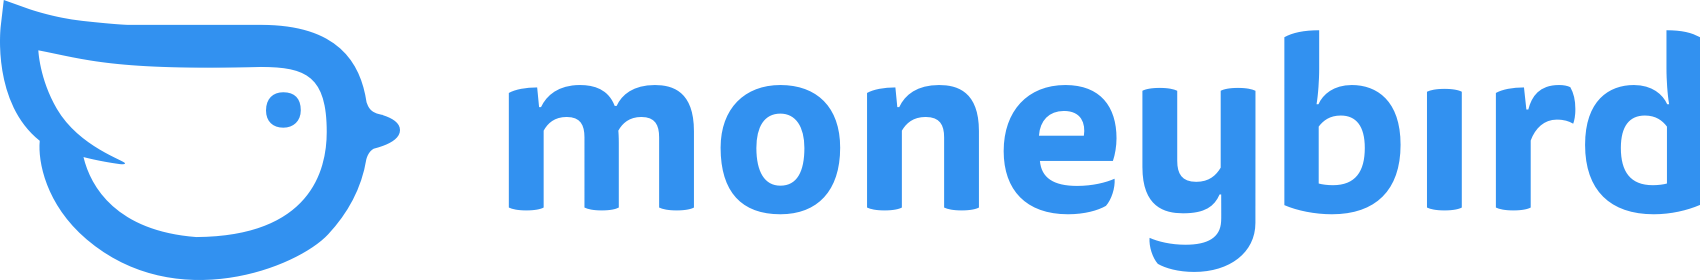 moneybird-logo-full-blue